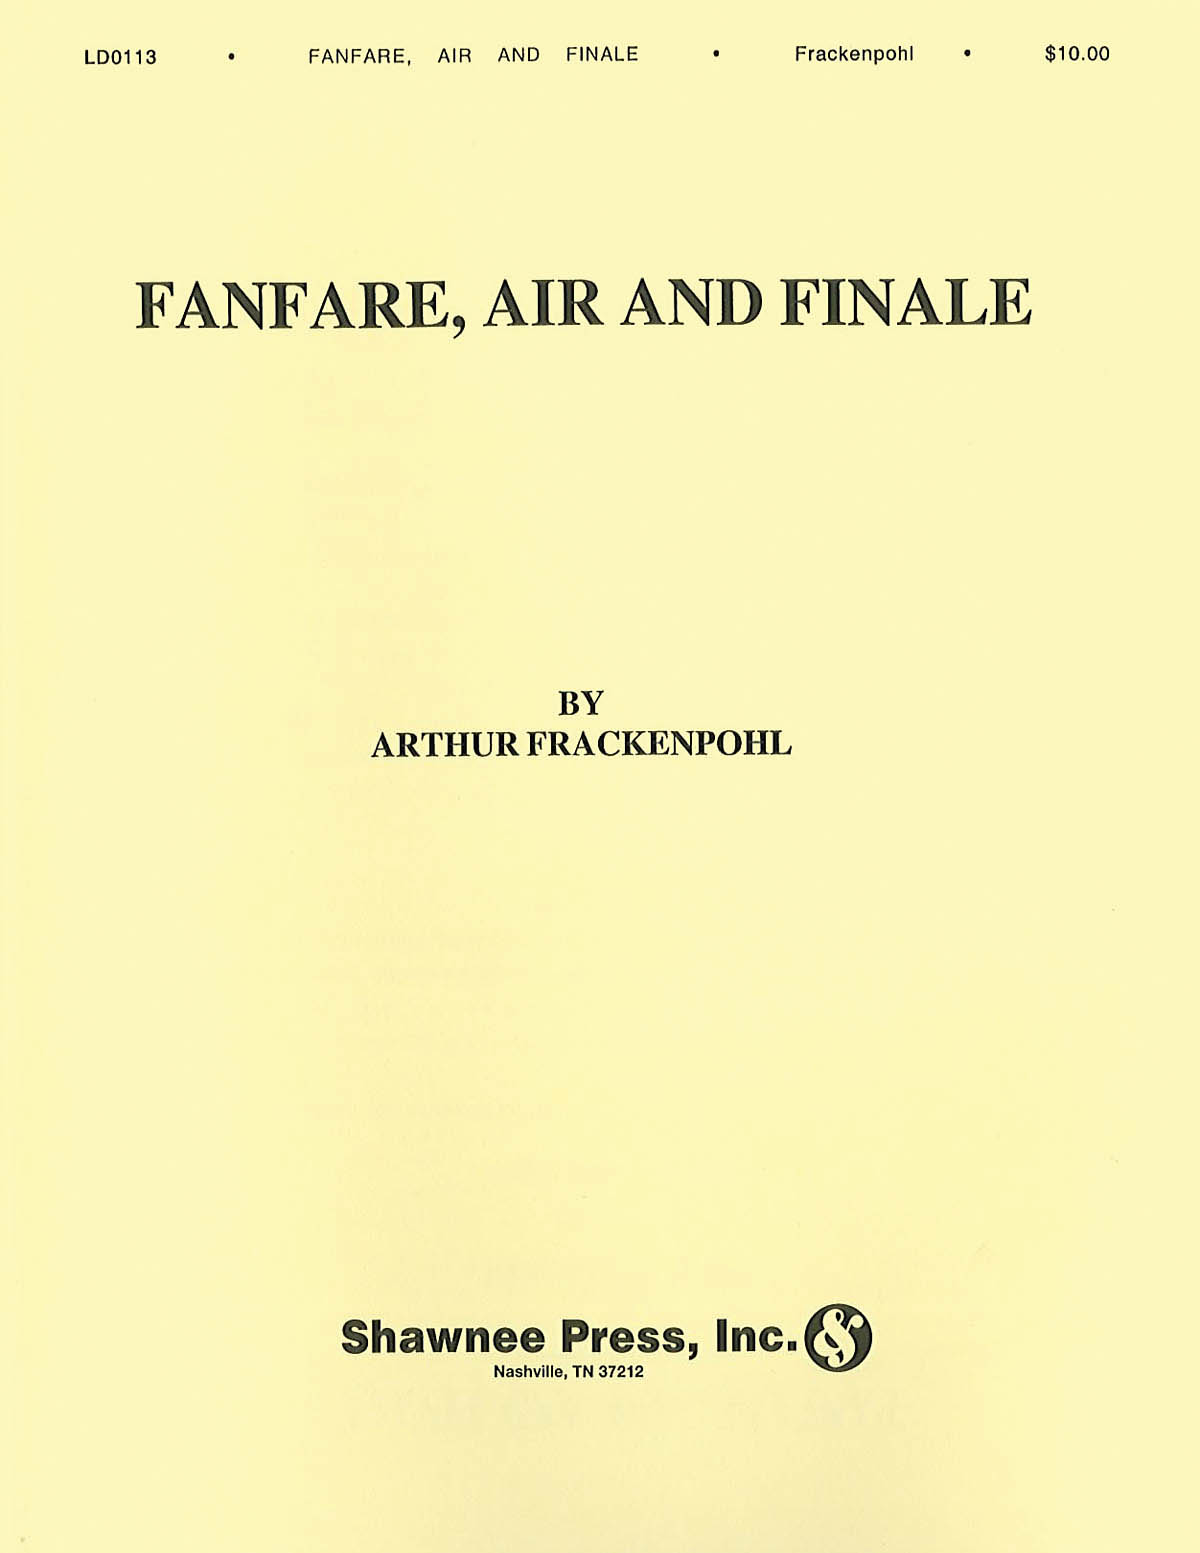 Arthur Frackenpohl: Fanfare  Air And Finale: Part